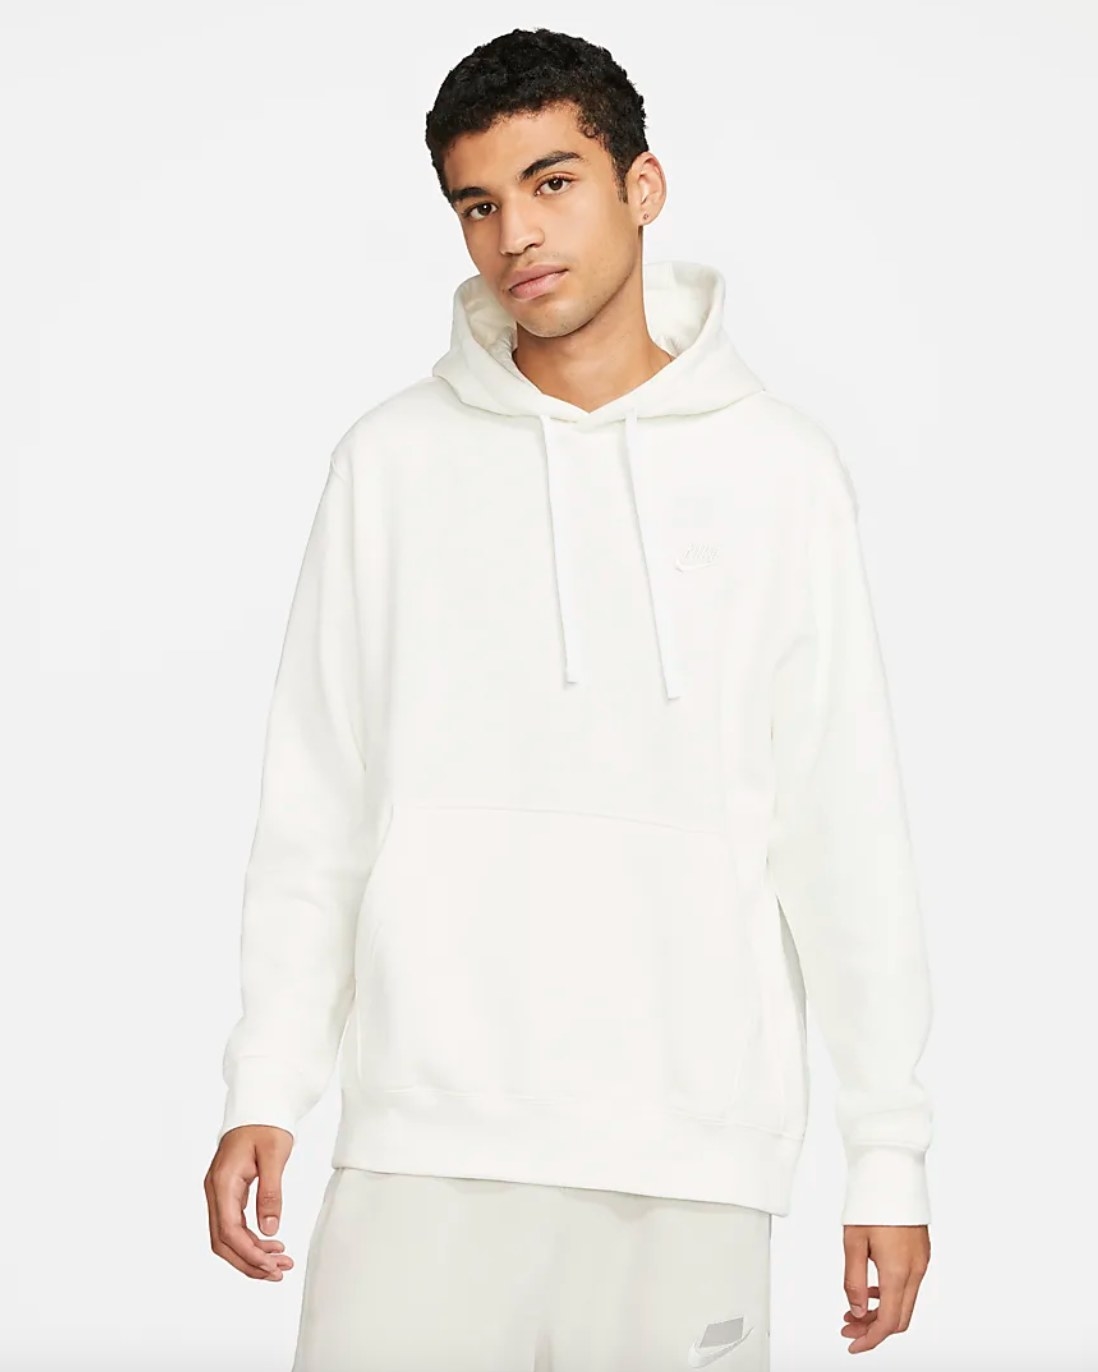 The Nike sportwear fleece in white being worn by a model